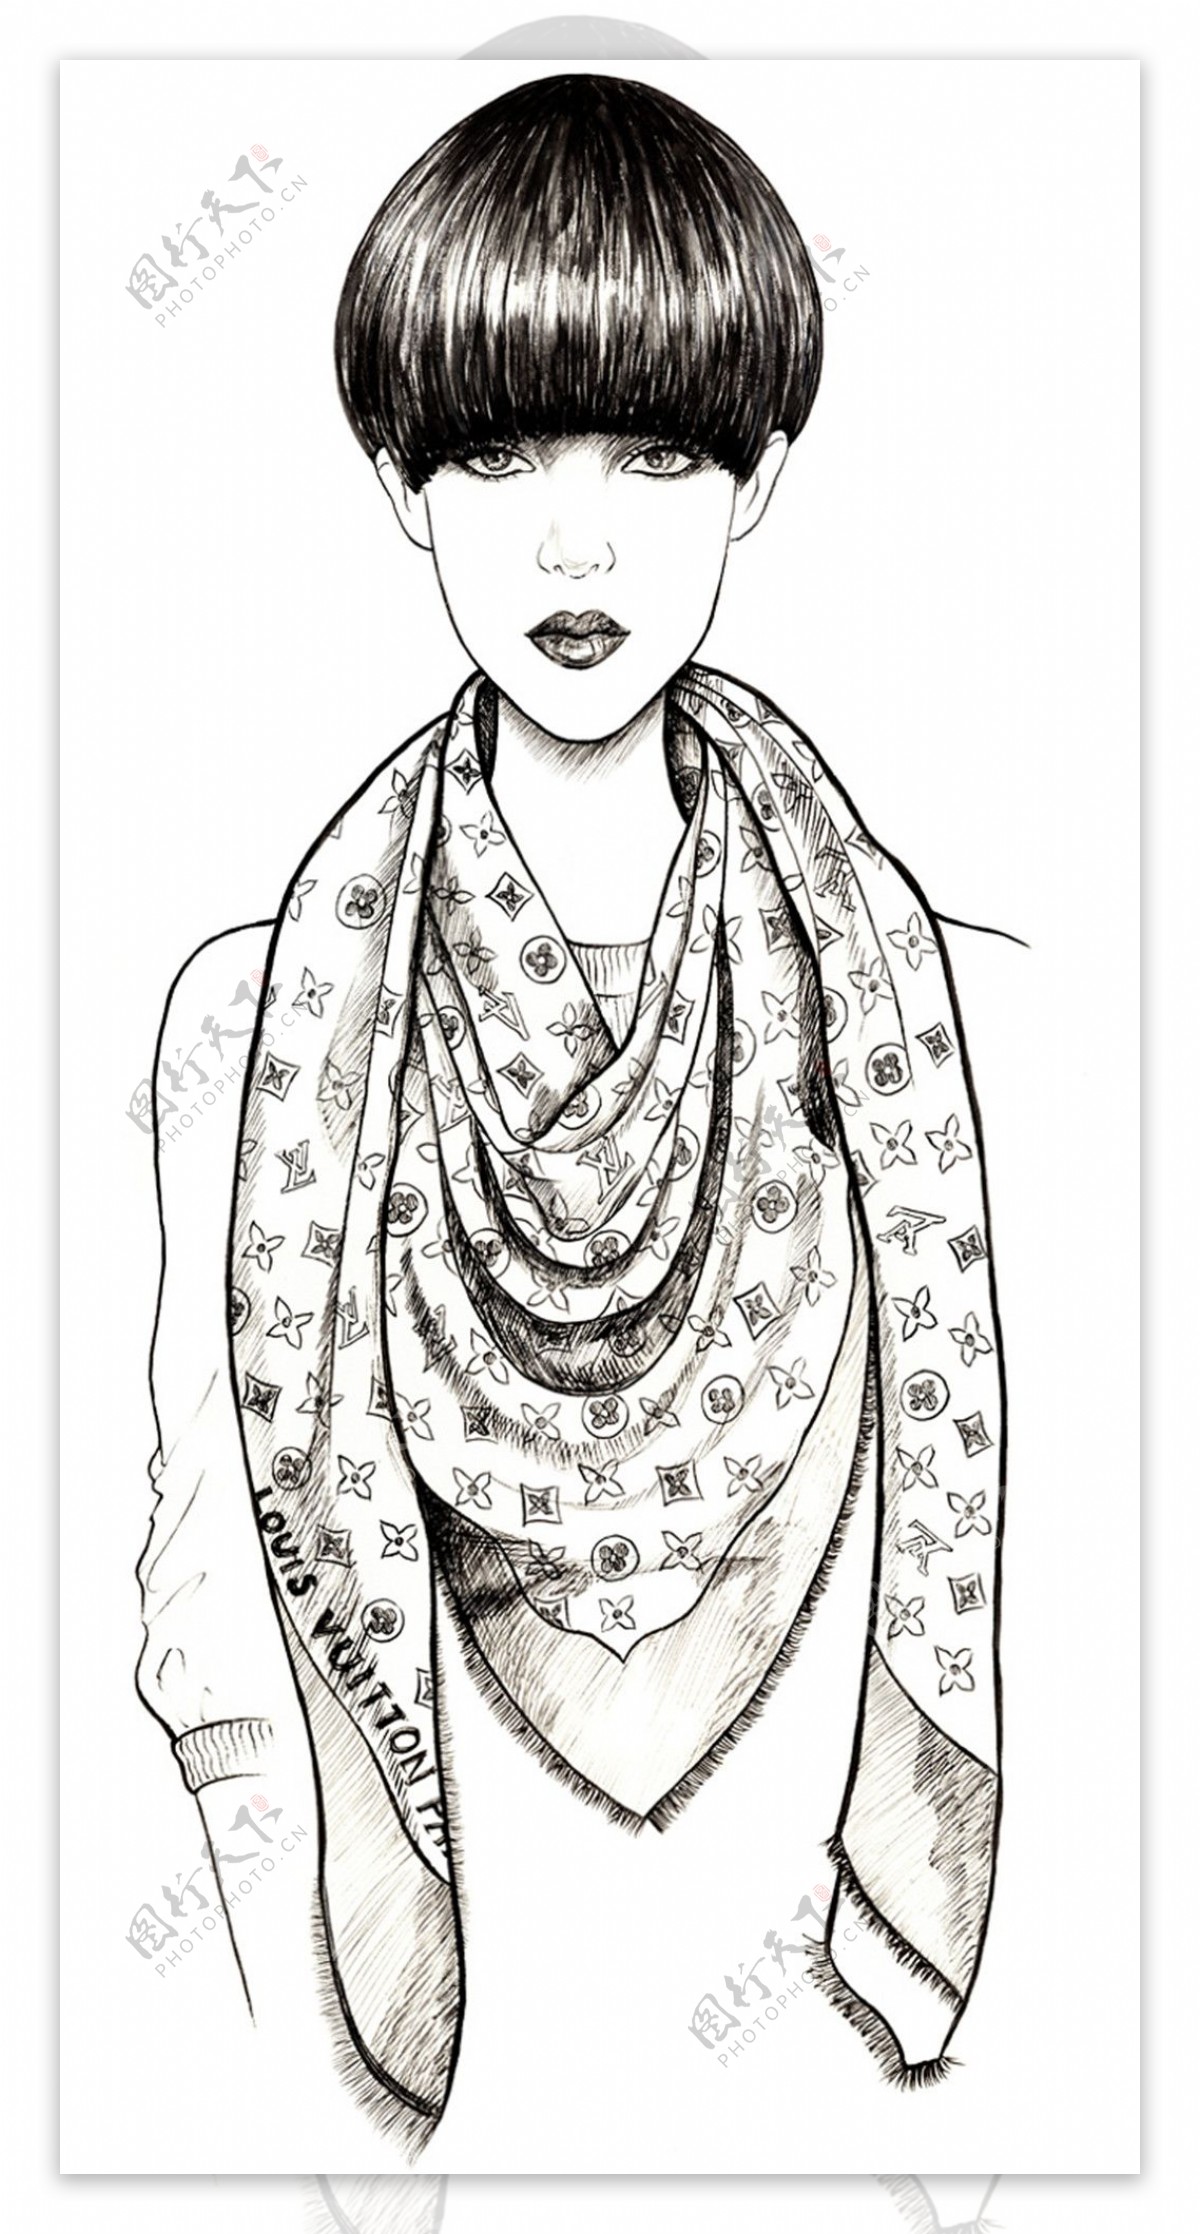 花纹围巾设计图